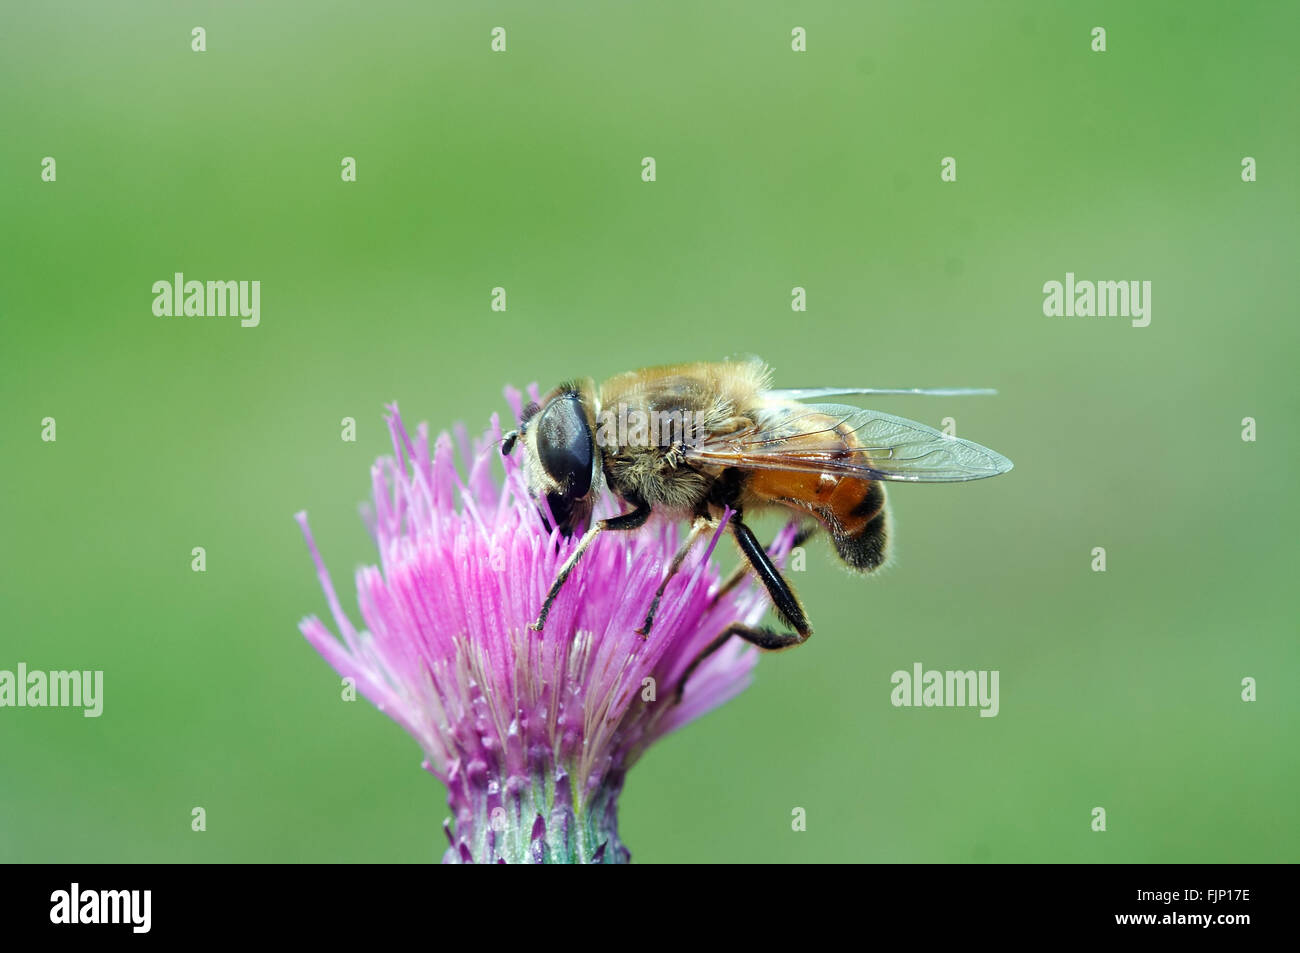 Impollinazione - Syrphyd volare sul blumo Foto Stock